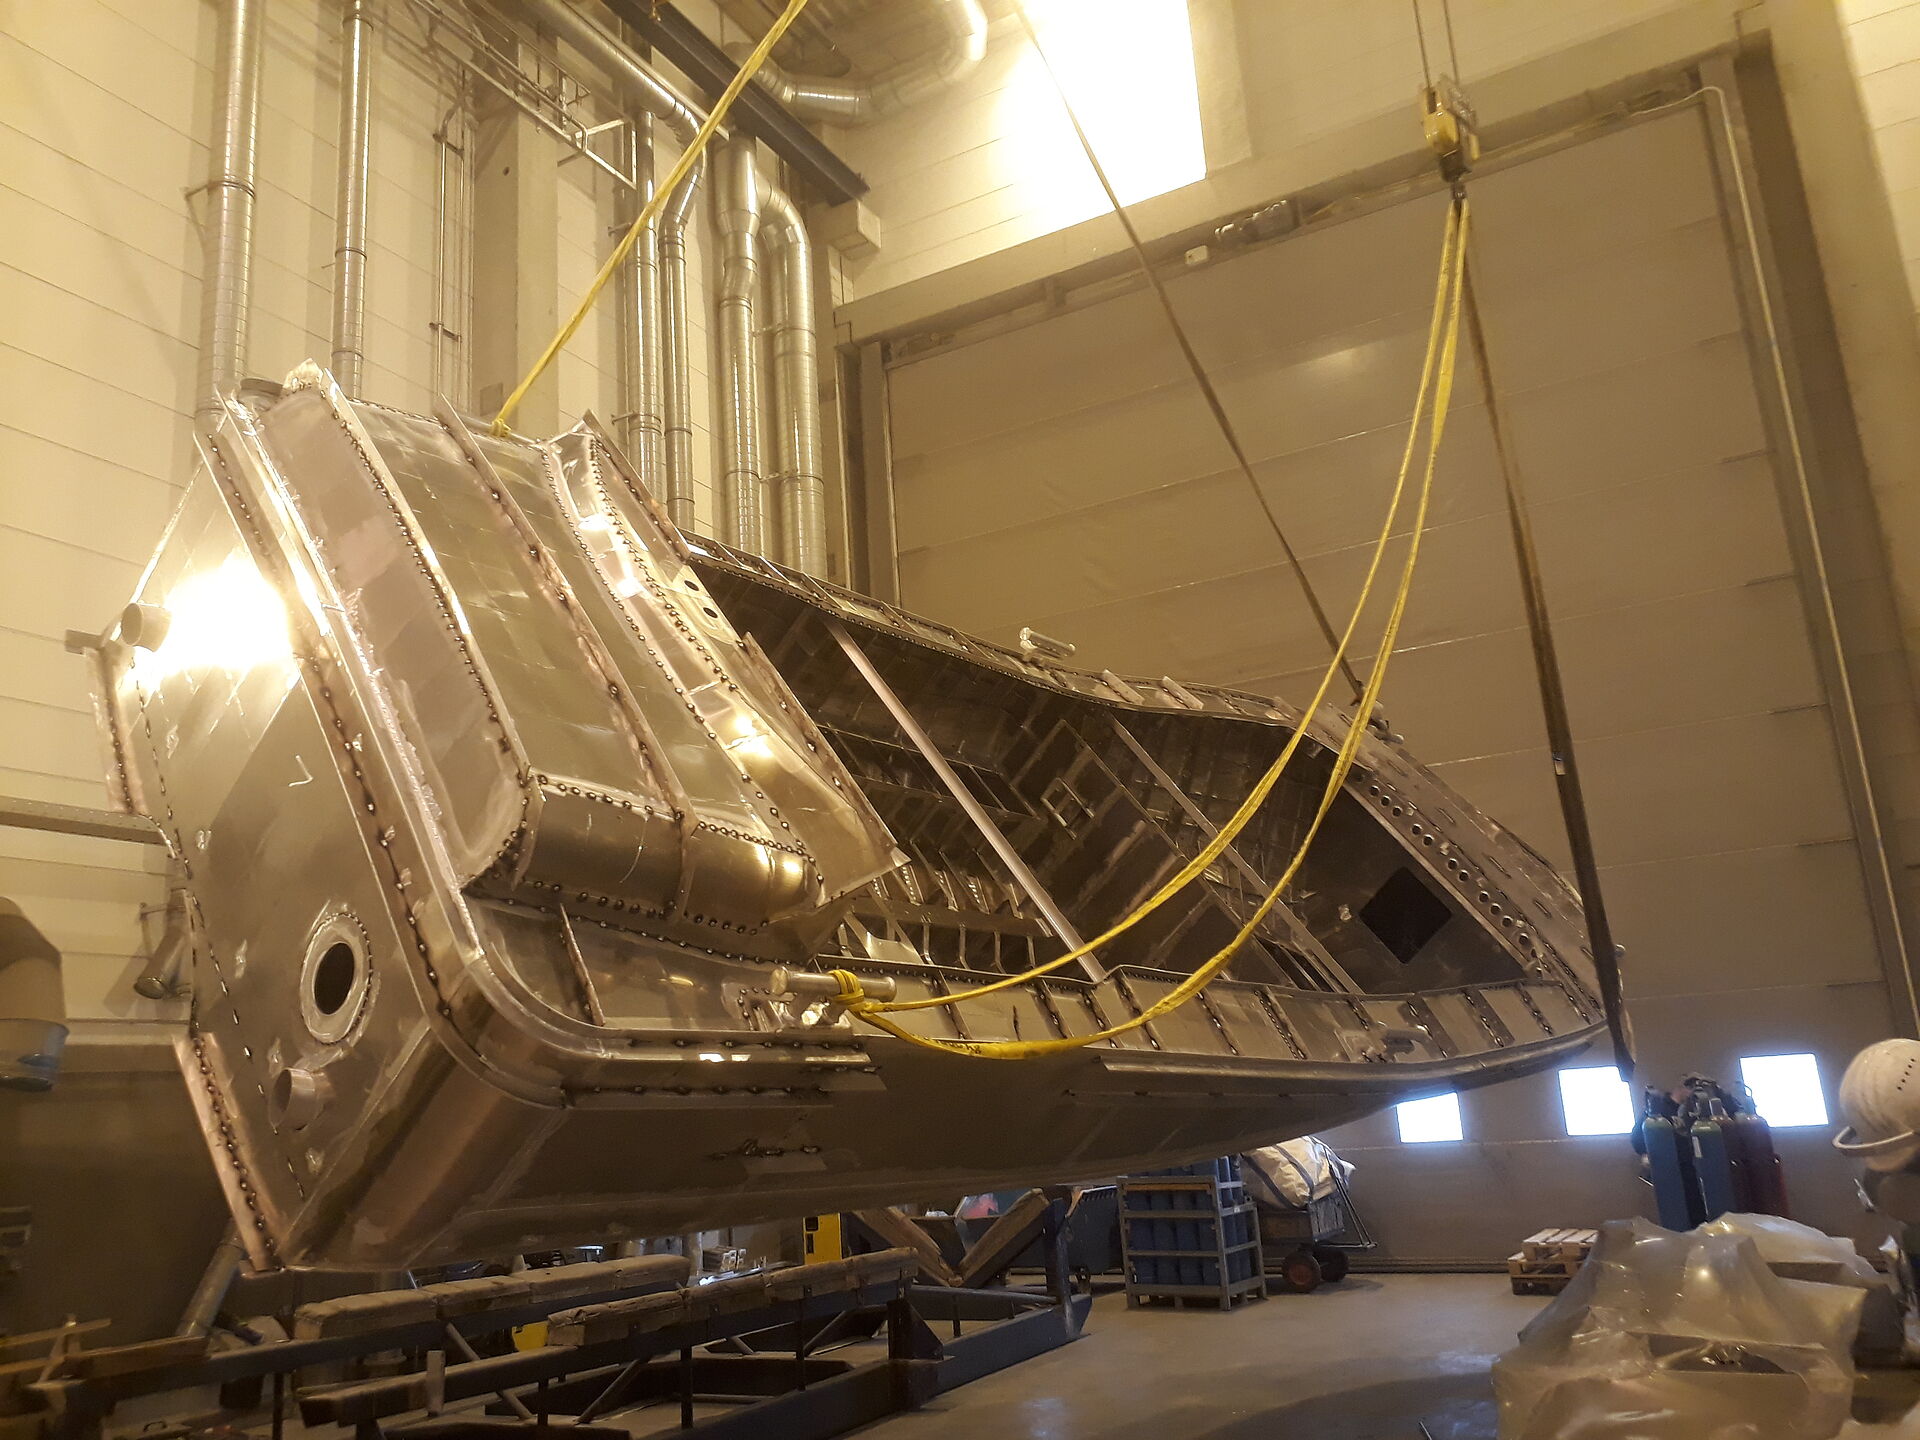 Der Rohbau aus Aluminium eines Seenotrettungsbootes wird in einer Werfthalle von einem Hallenkran um die Längsachse gedreht. Das Boot ist fast wieder aufgerichtet.